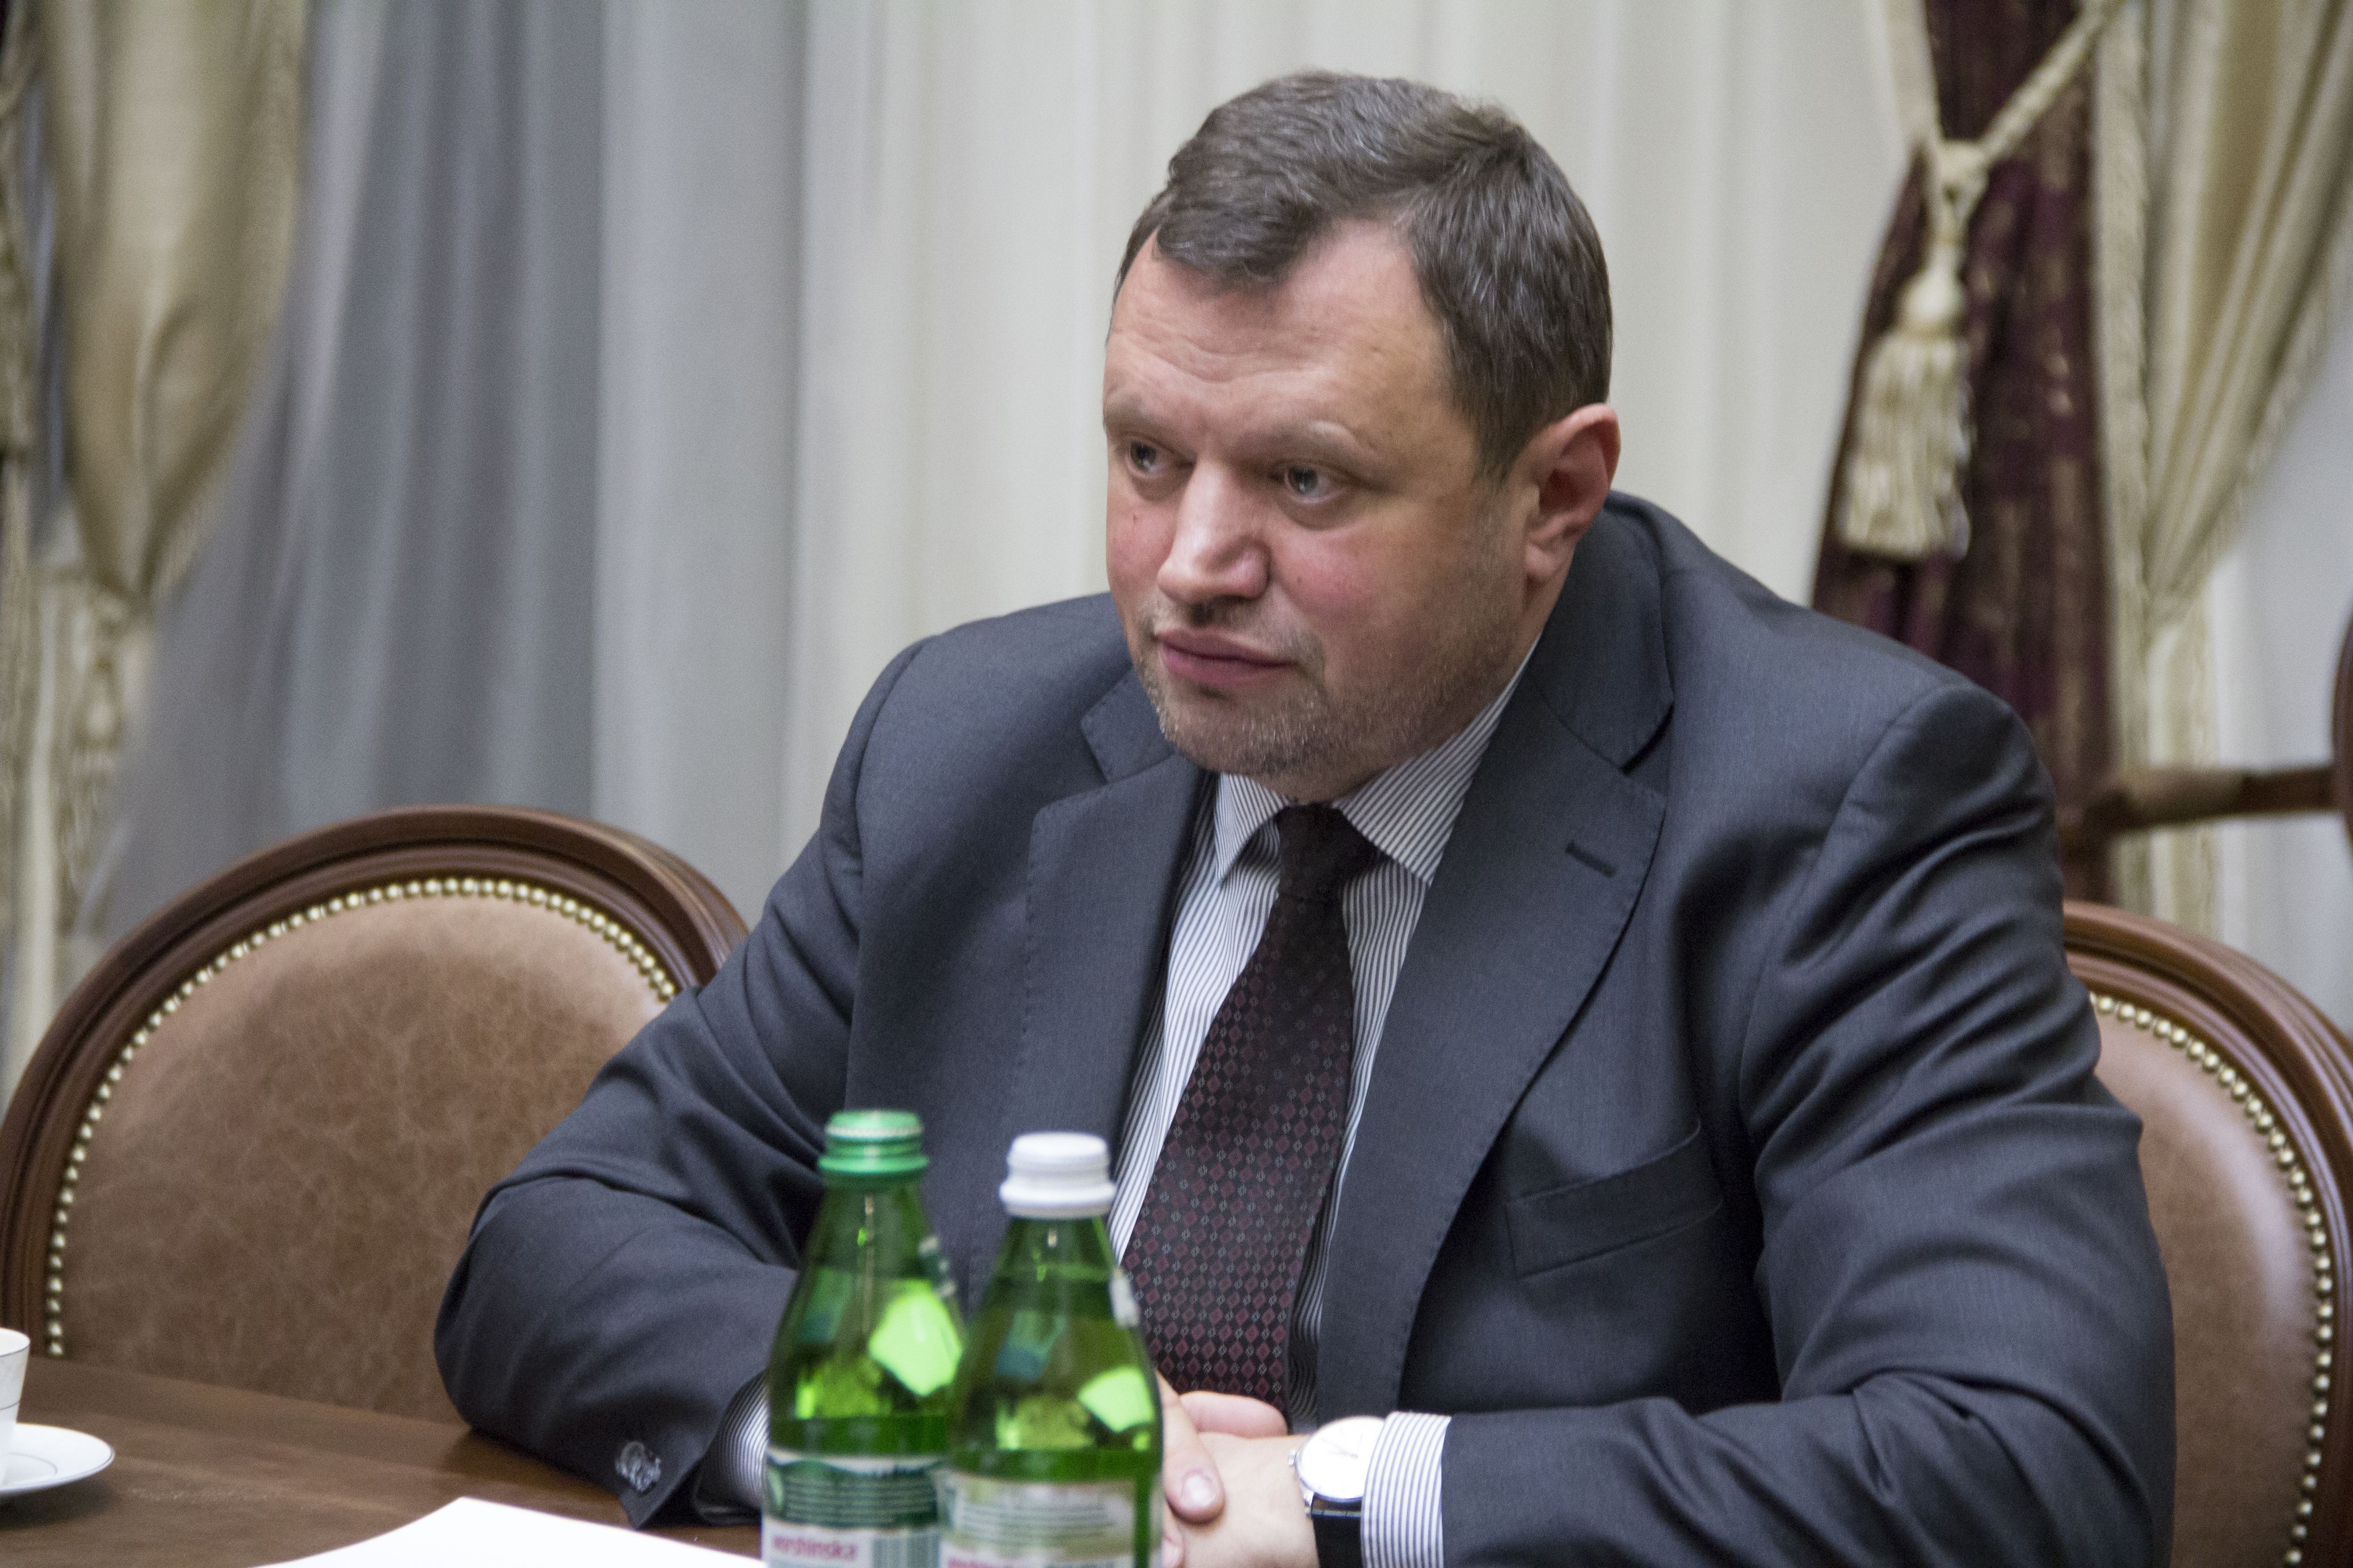 Посол Угорщини в Україні Ерно Кешкень